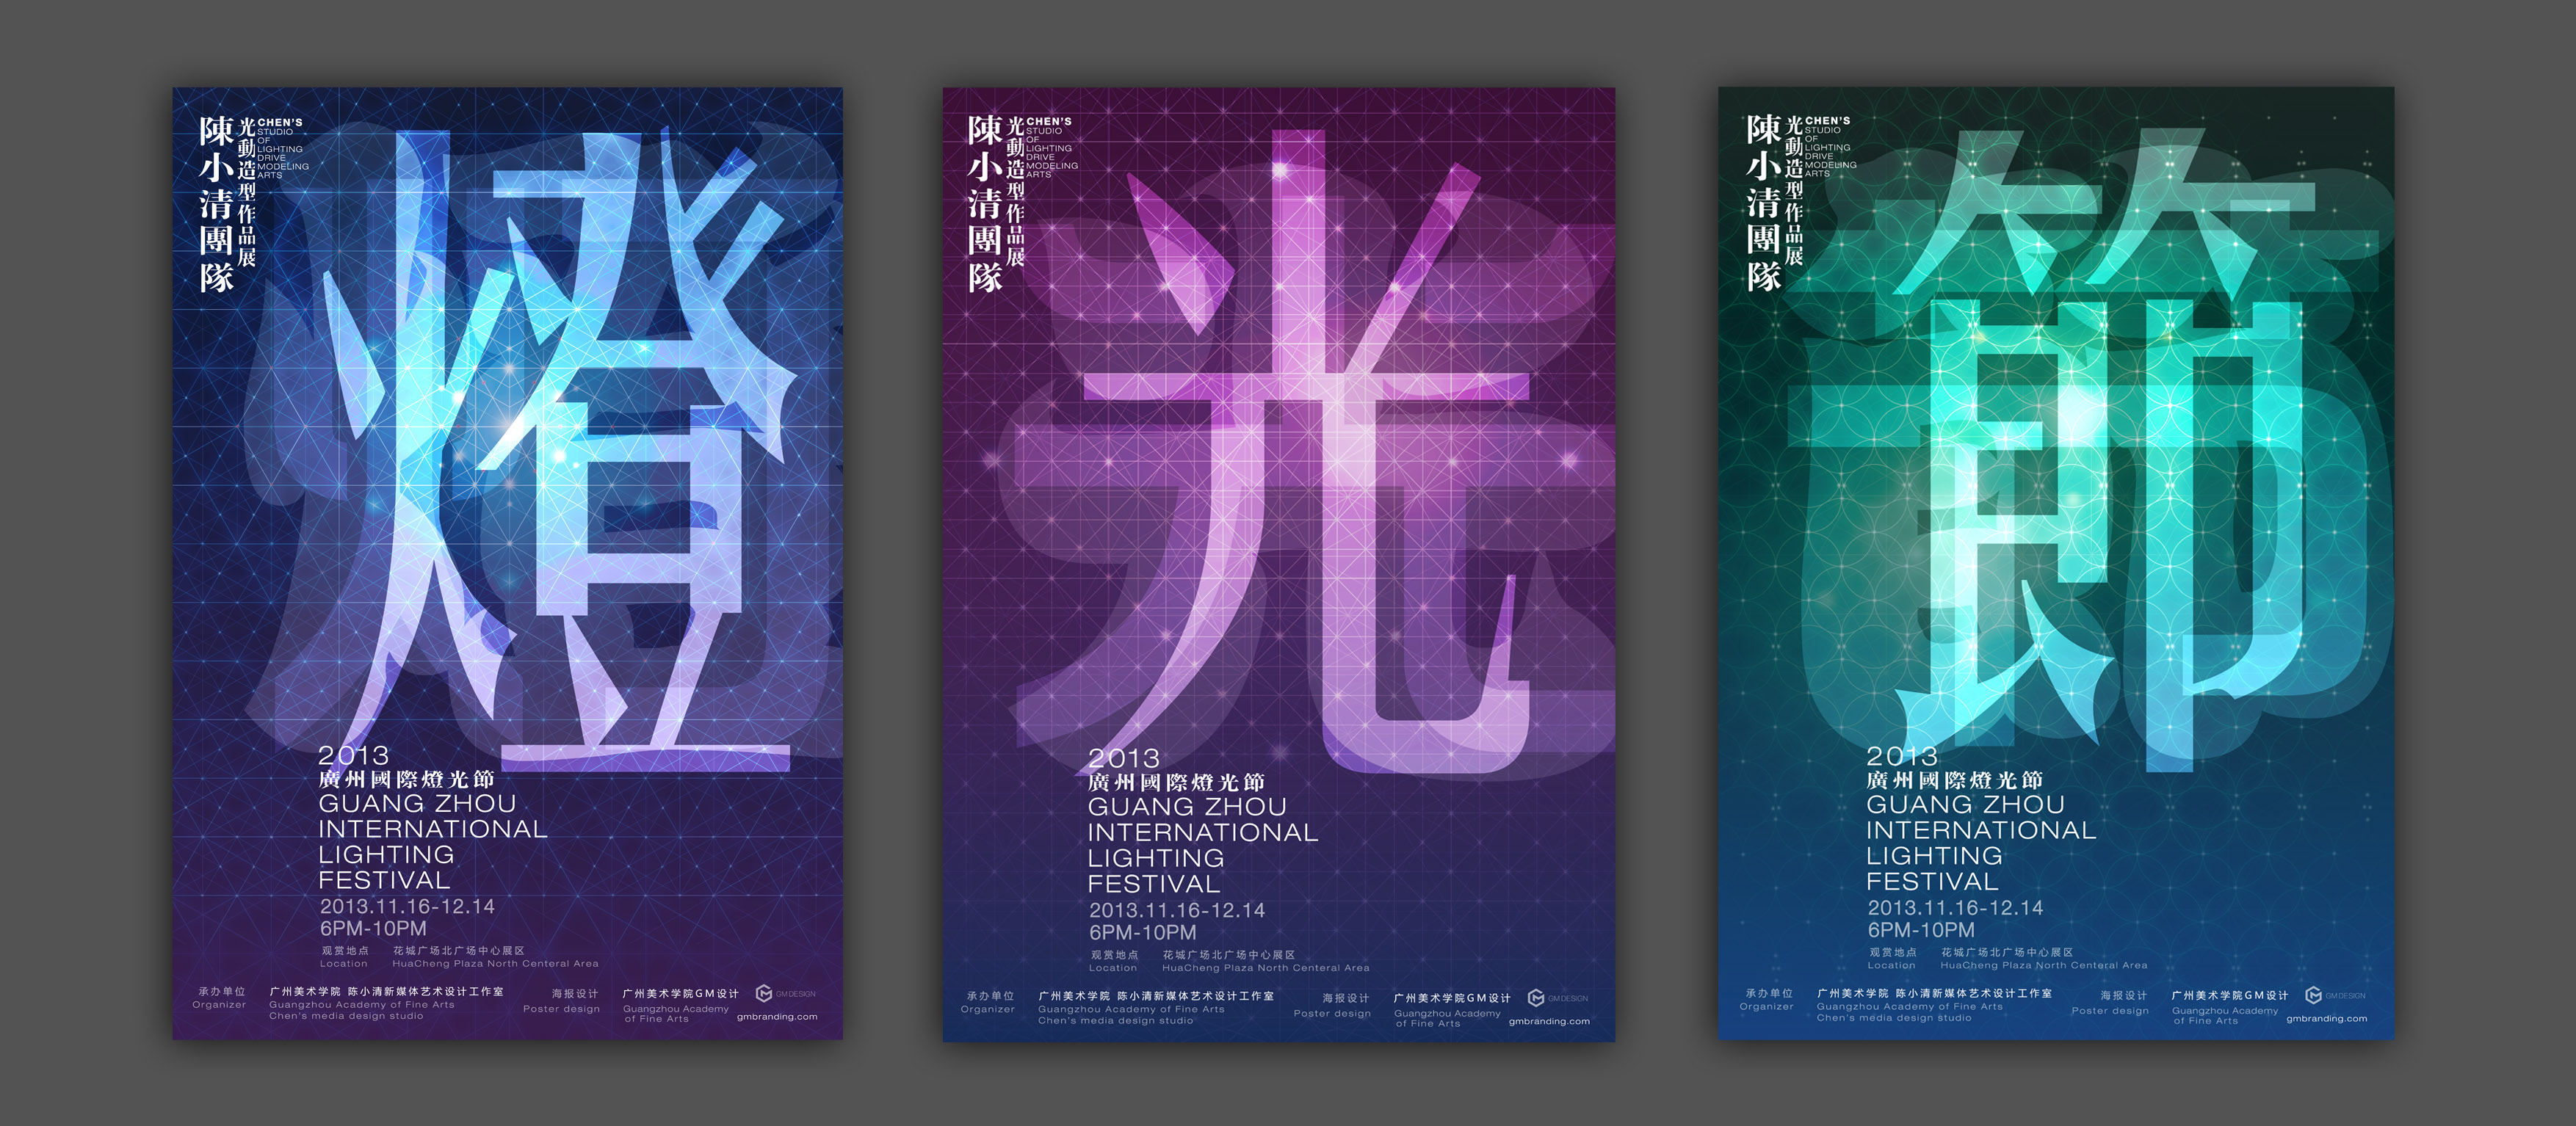 广州2013国际灯光节——广州美术学院展厅海报形象设计